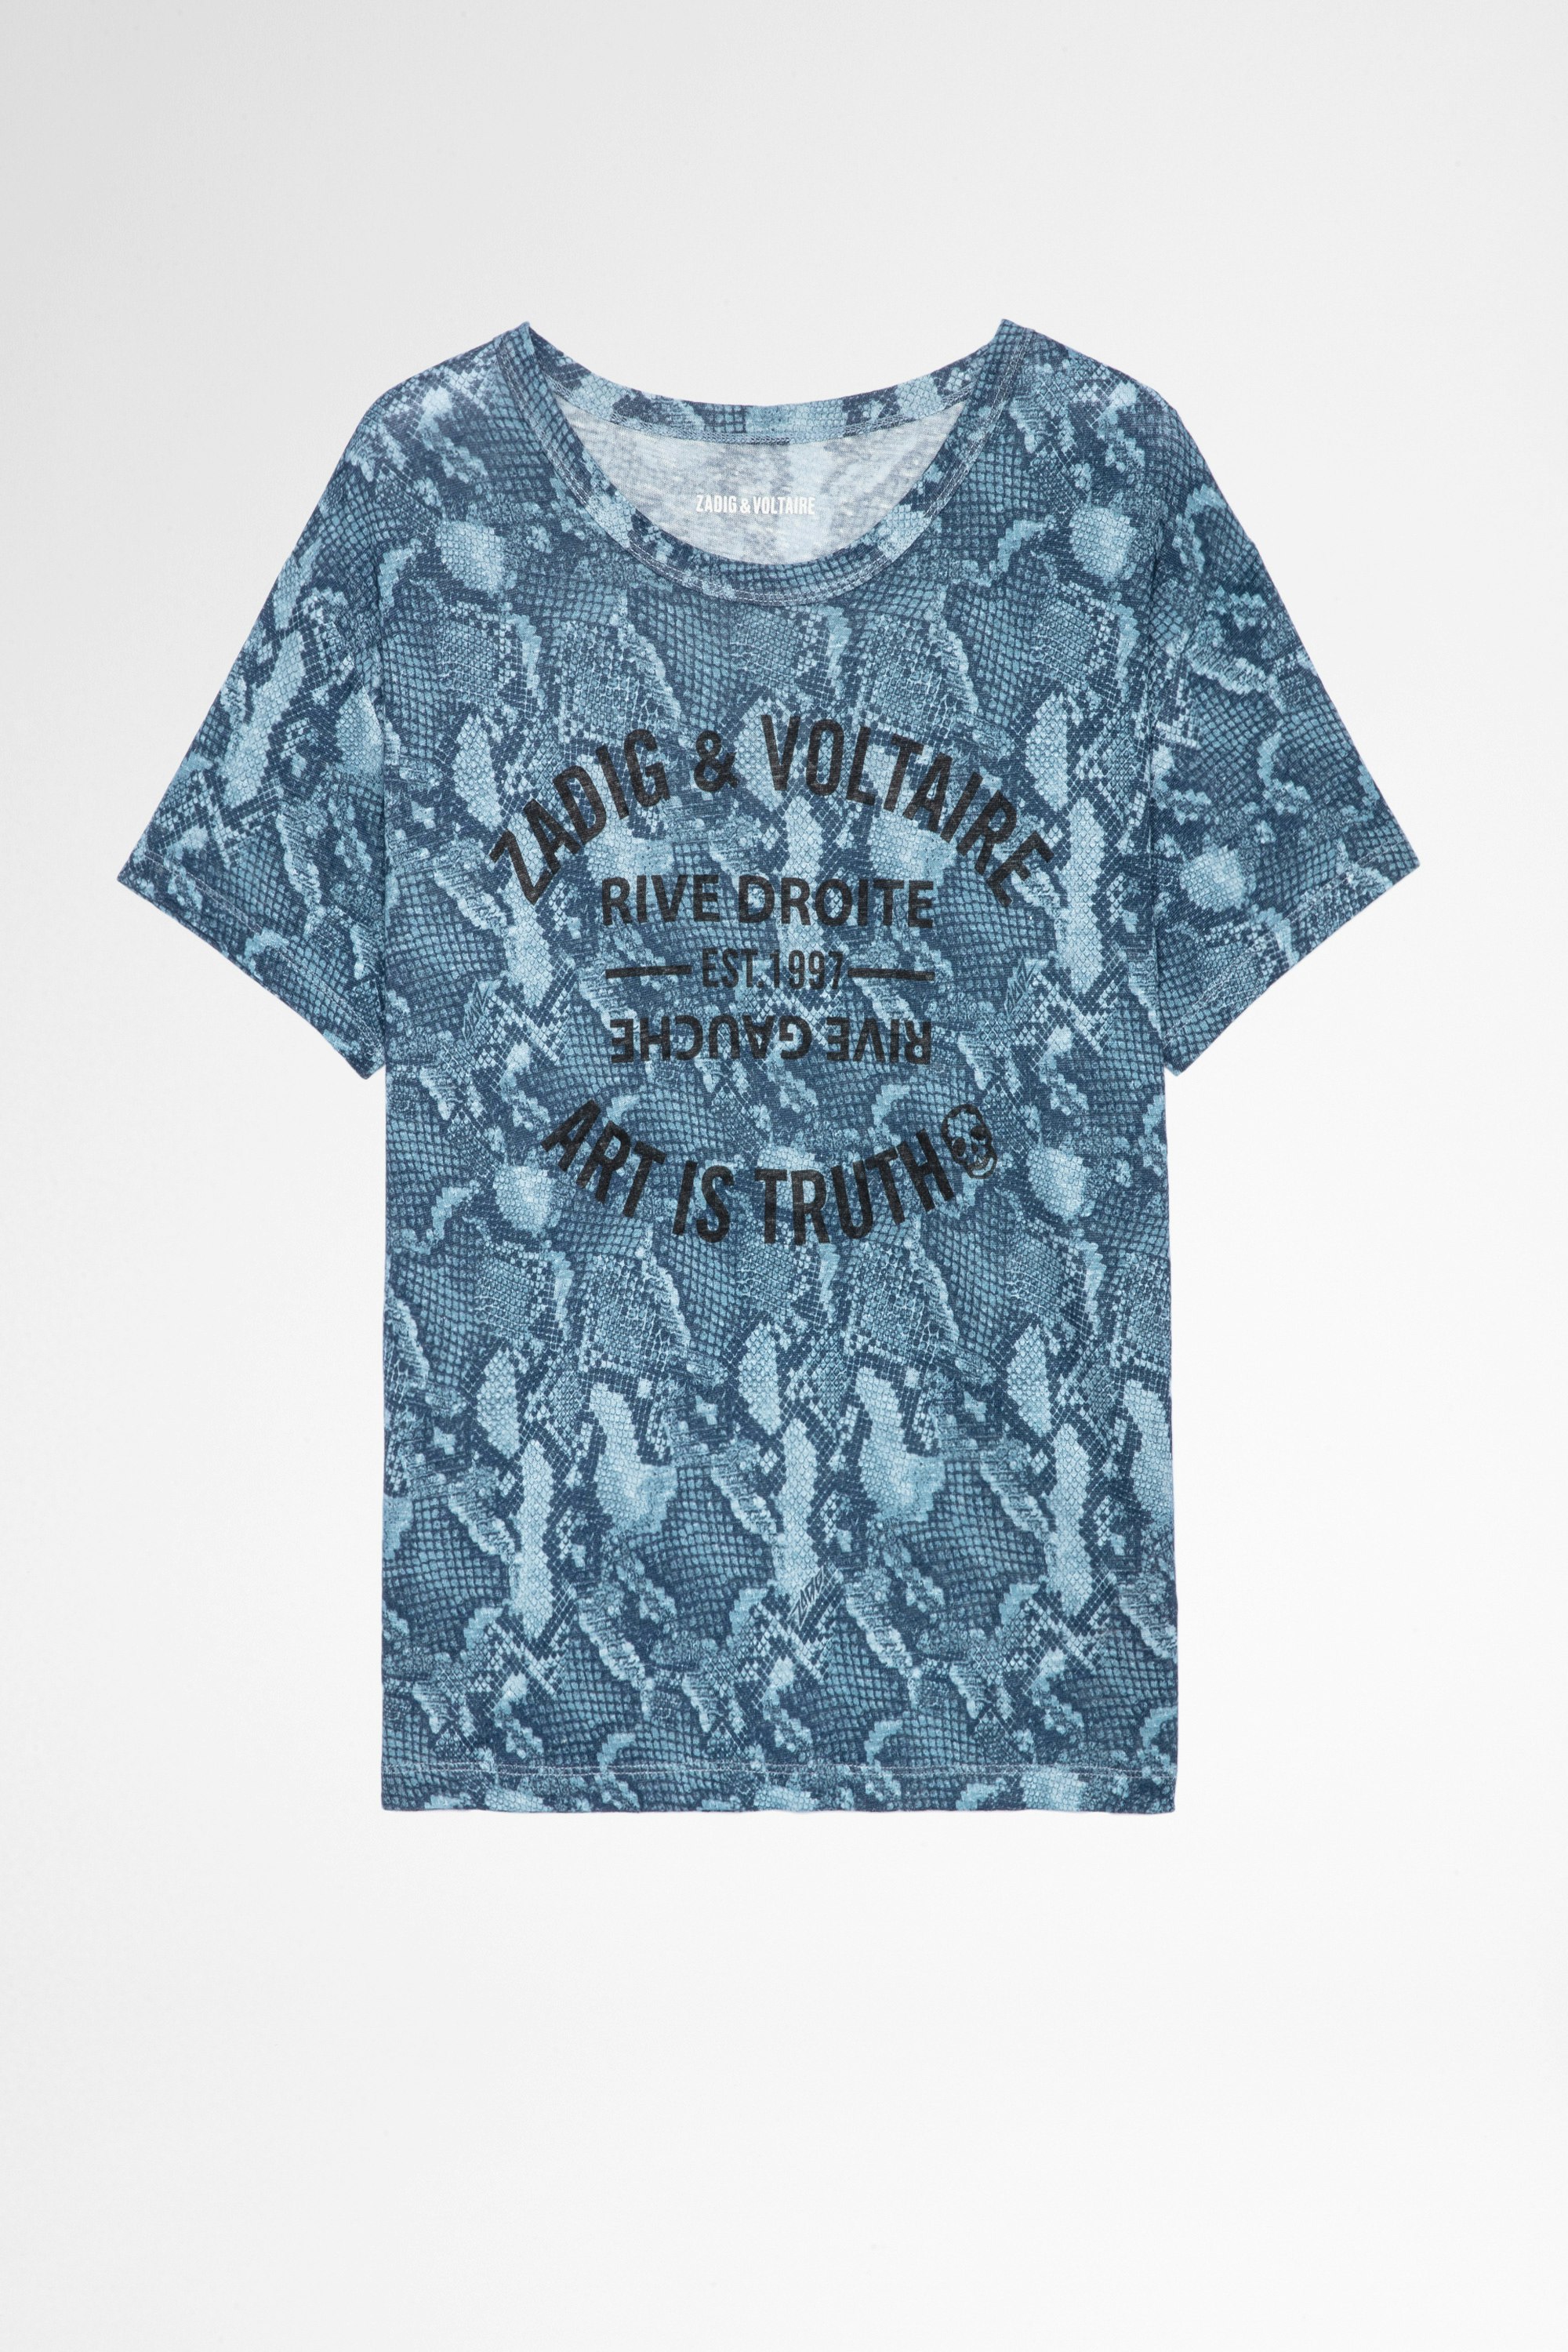 Marta Wild Blason T-shirt Leinen Women's blue linen T-shirt with snake and badge print